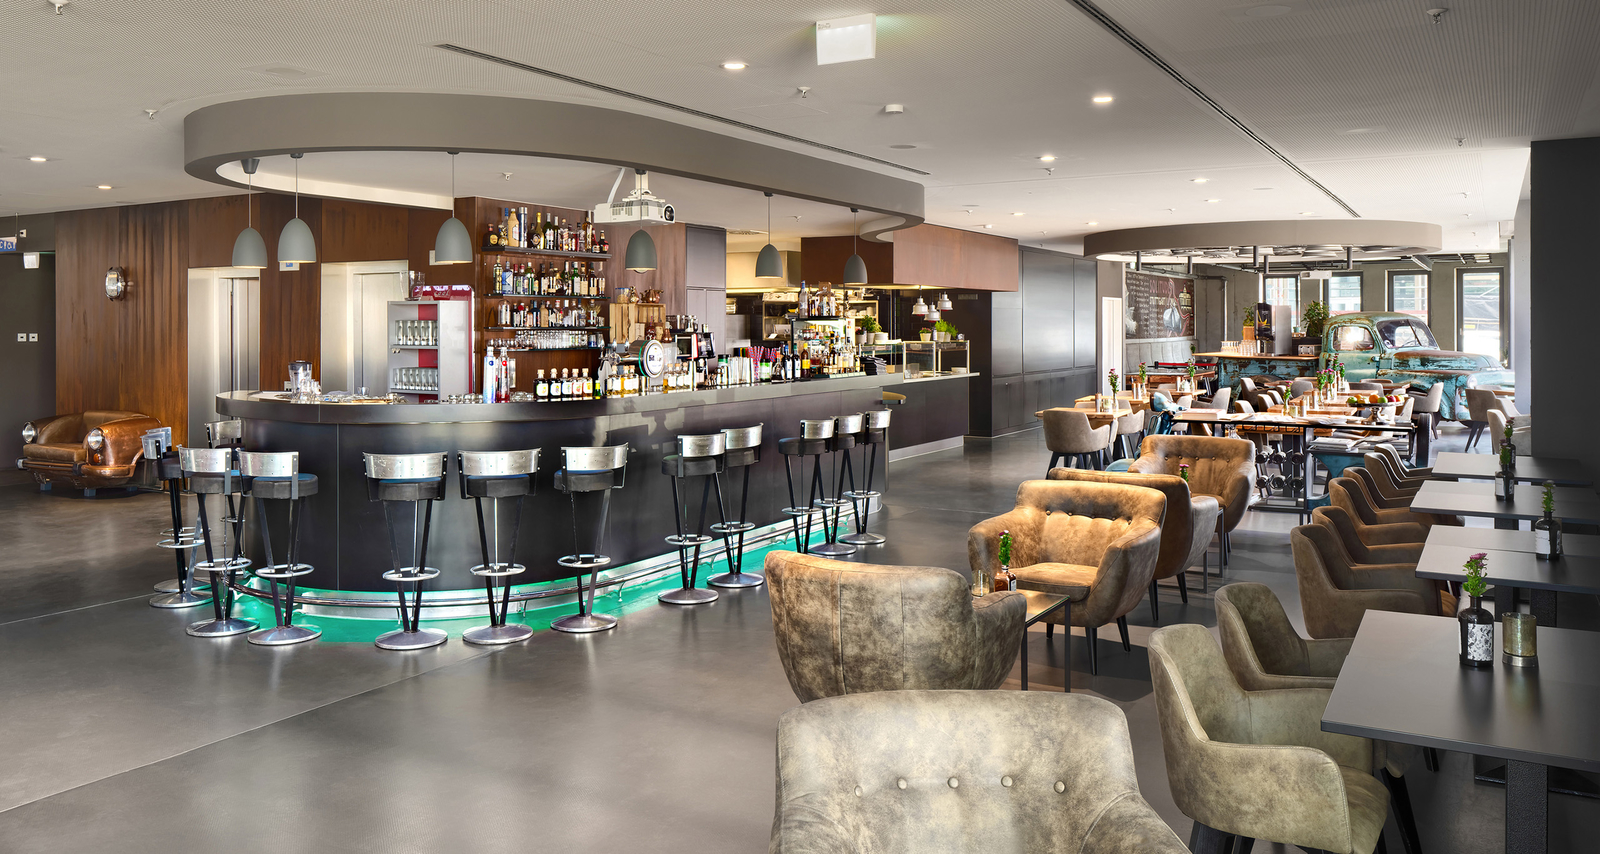 Einblick in die moderne beleuchtete Hotelbar im Restaurant PICK-UP in Böblingen